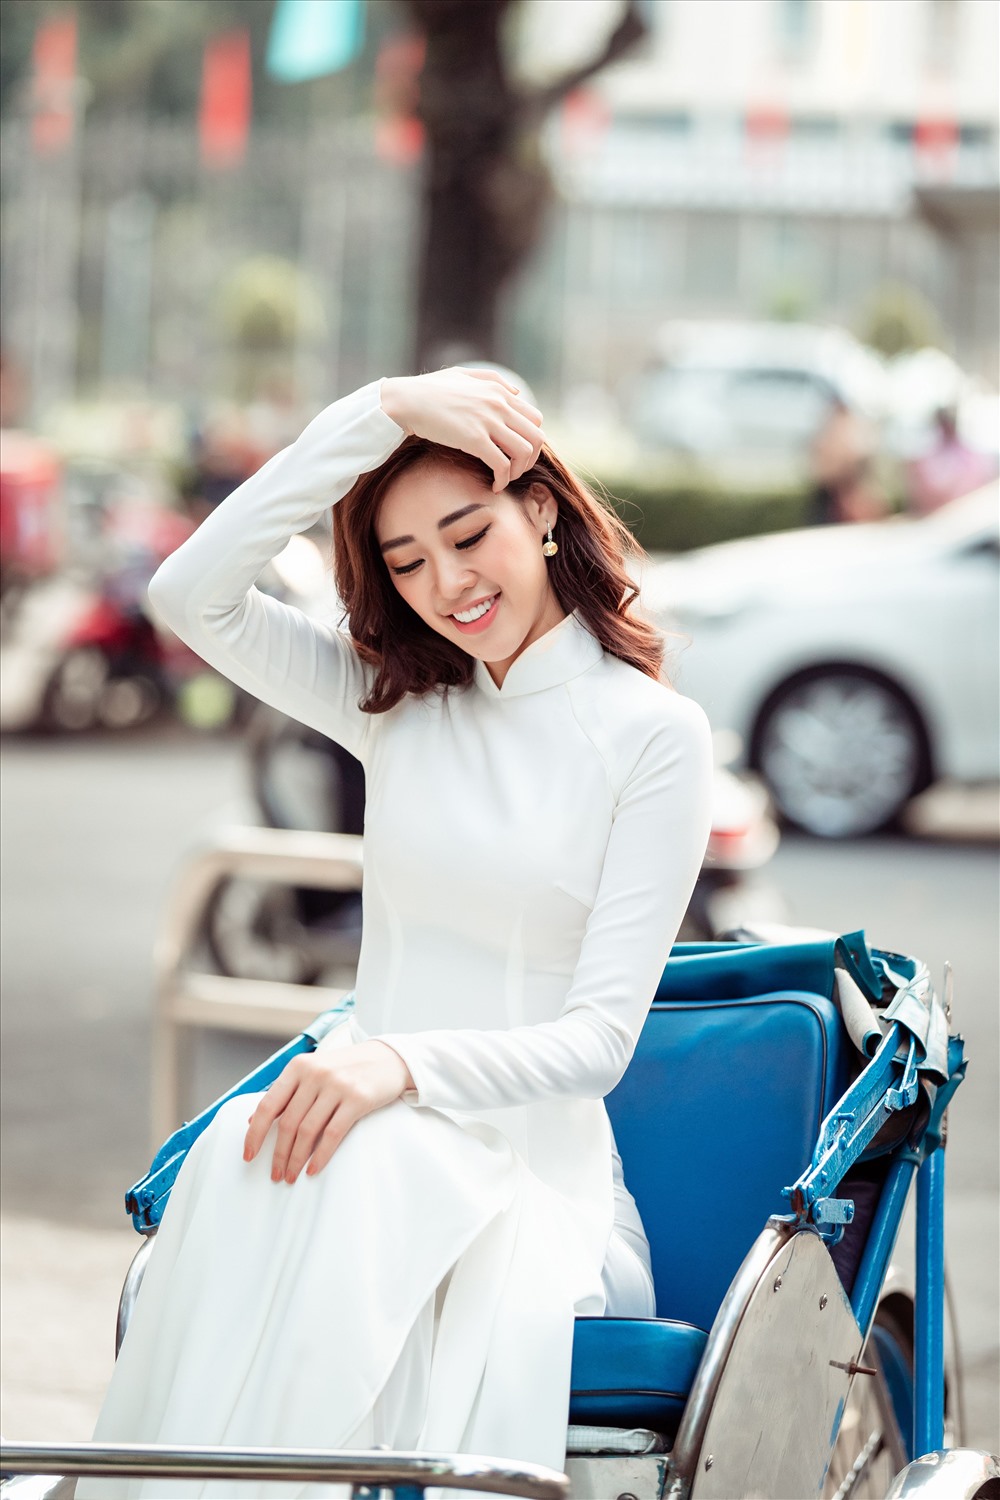 Lần này, Hoa hậu Khánh Vân không chỉ đi bộ mà còn đi trên xe xích lô – một vẻ đẹp văn hóa đặc trưng của Sài Gòn mỗi khi nhắc đến. Ảnh: David Sắn.